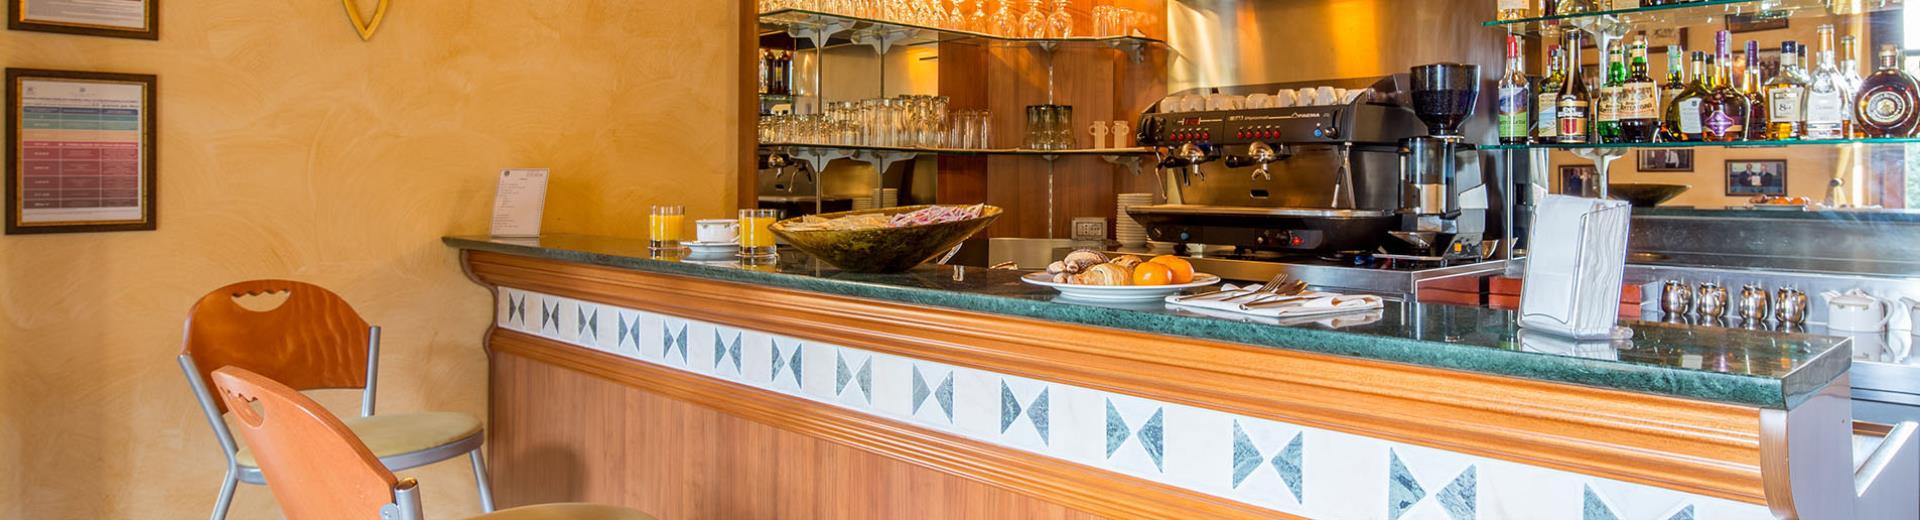 Le Lounge Bar du Best Western Plus Hôtel le Rondini, près de Turin et de l'''''''' aéroport, est idéale pour organiser et personnaliser des pauses-café, des déjeuners d ''''affaires et des apéritifs.